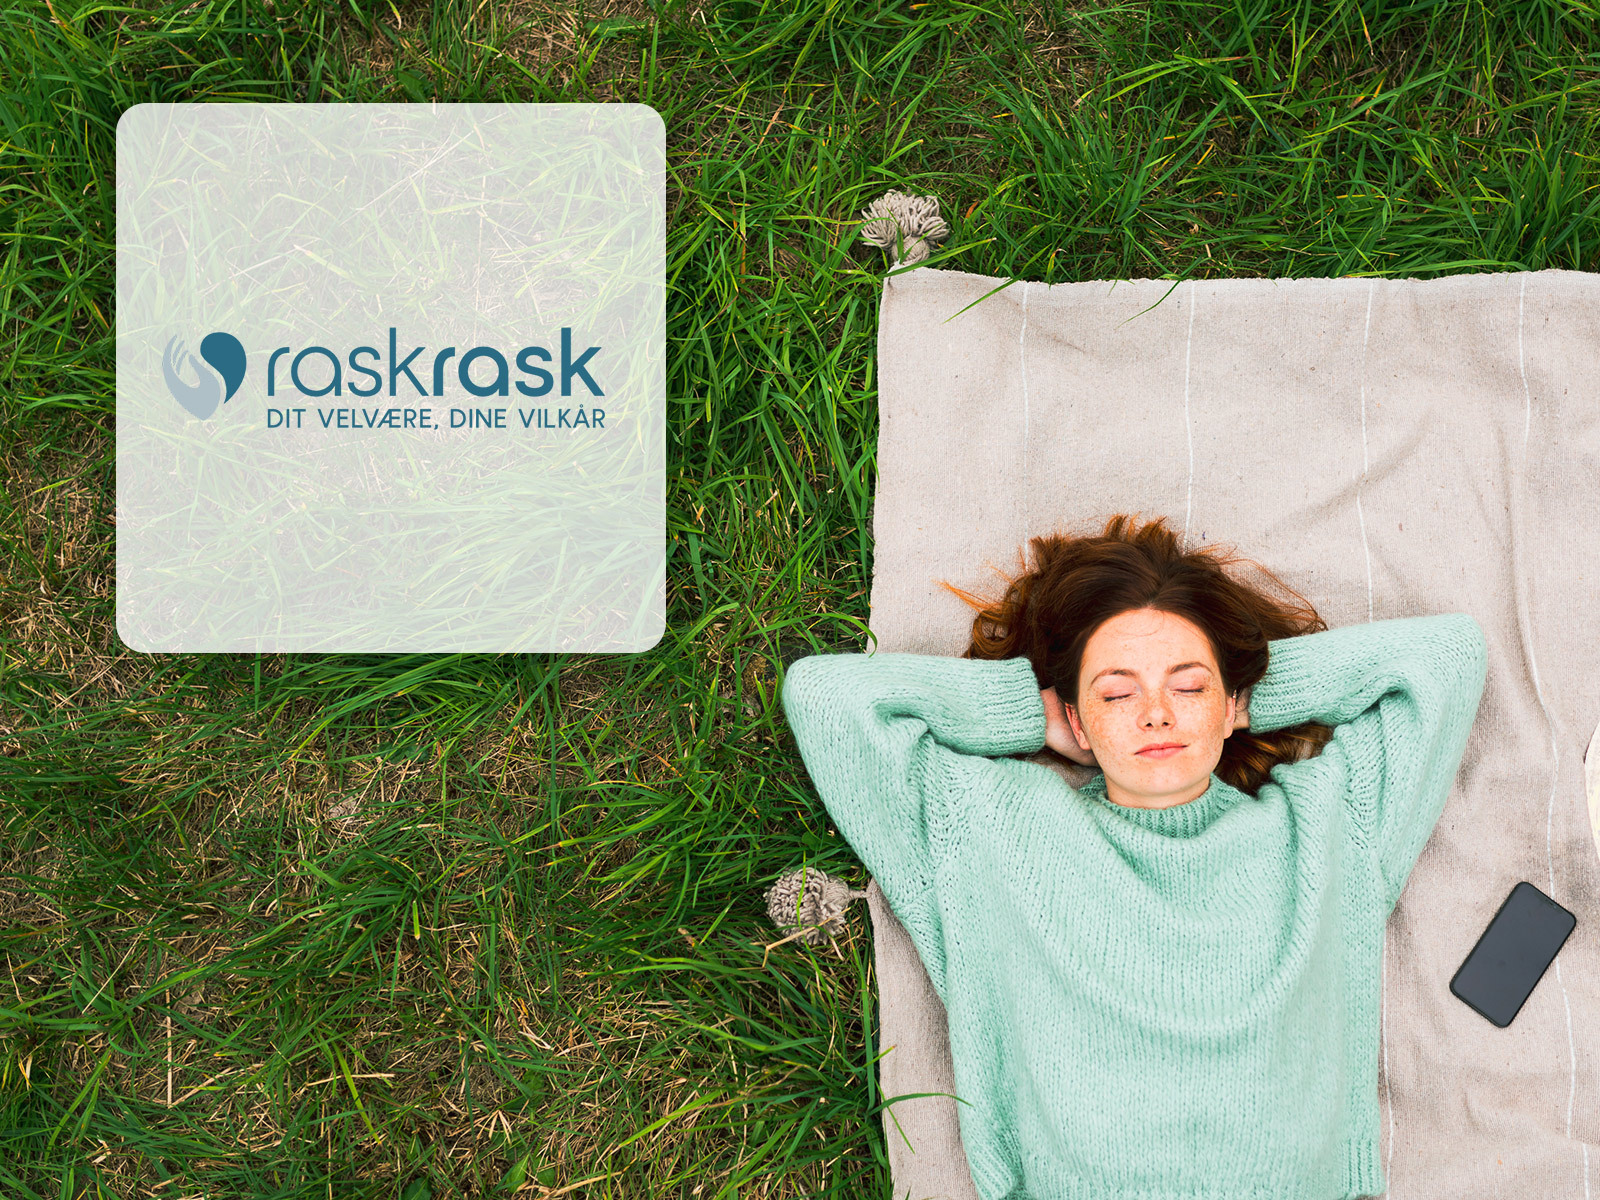 Danmarks største massørkæde RaskRask har gjort MobilePay Invoice til den dominerende betalingsmetode. 